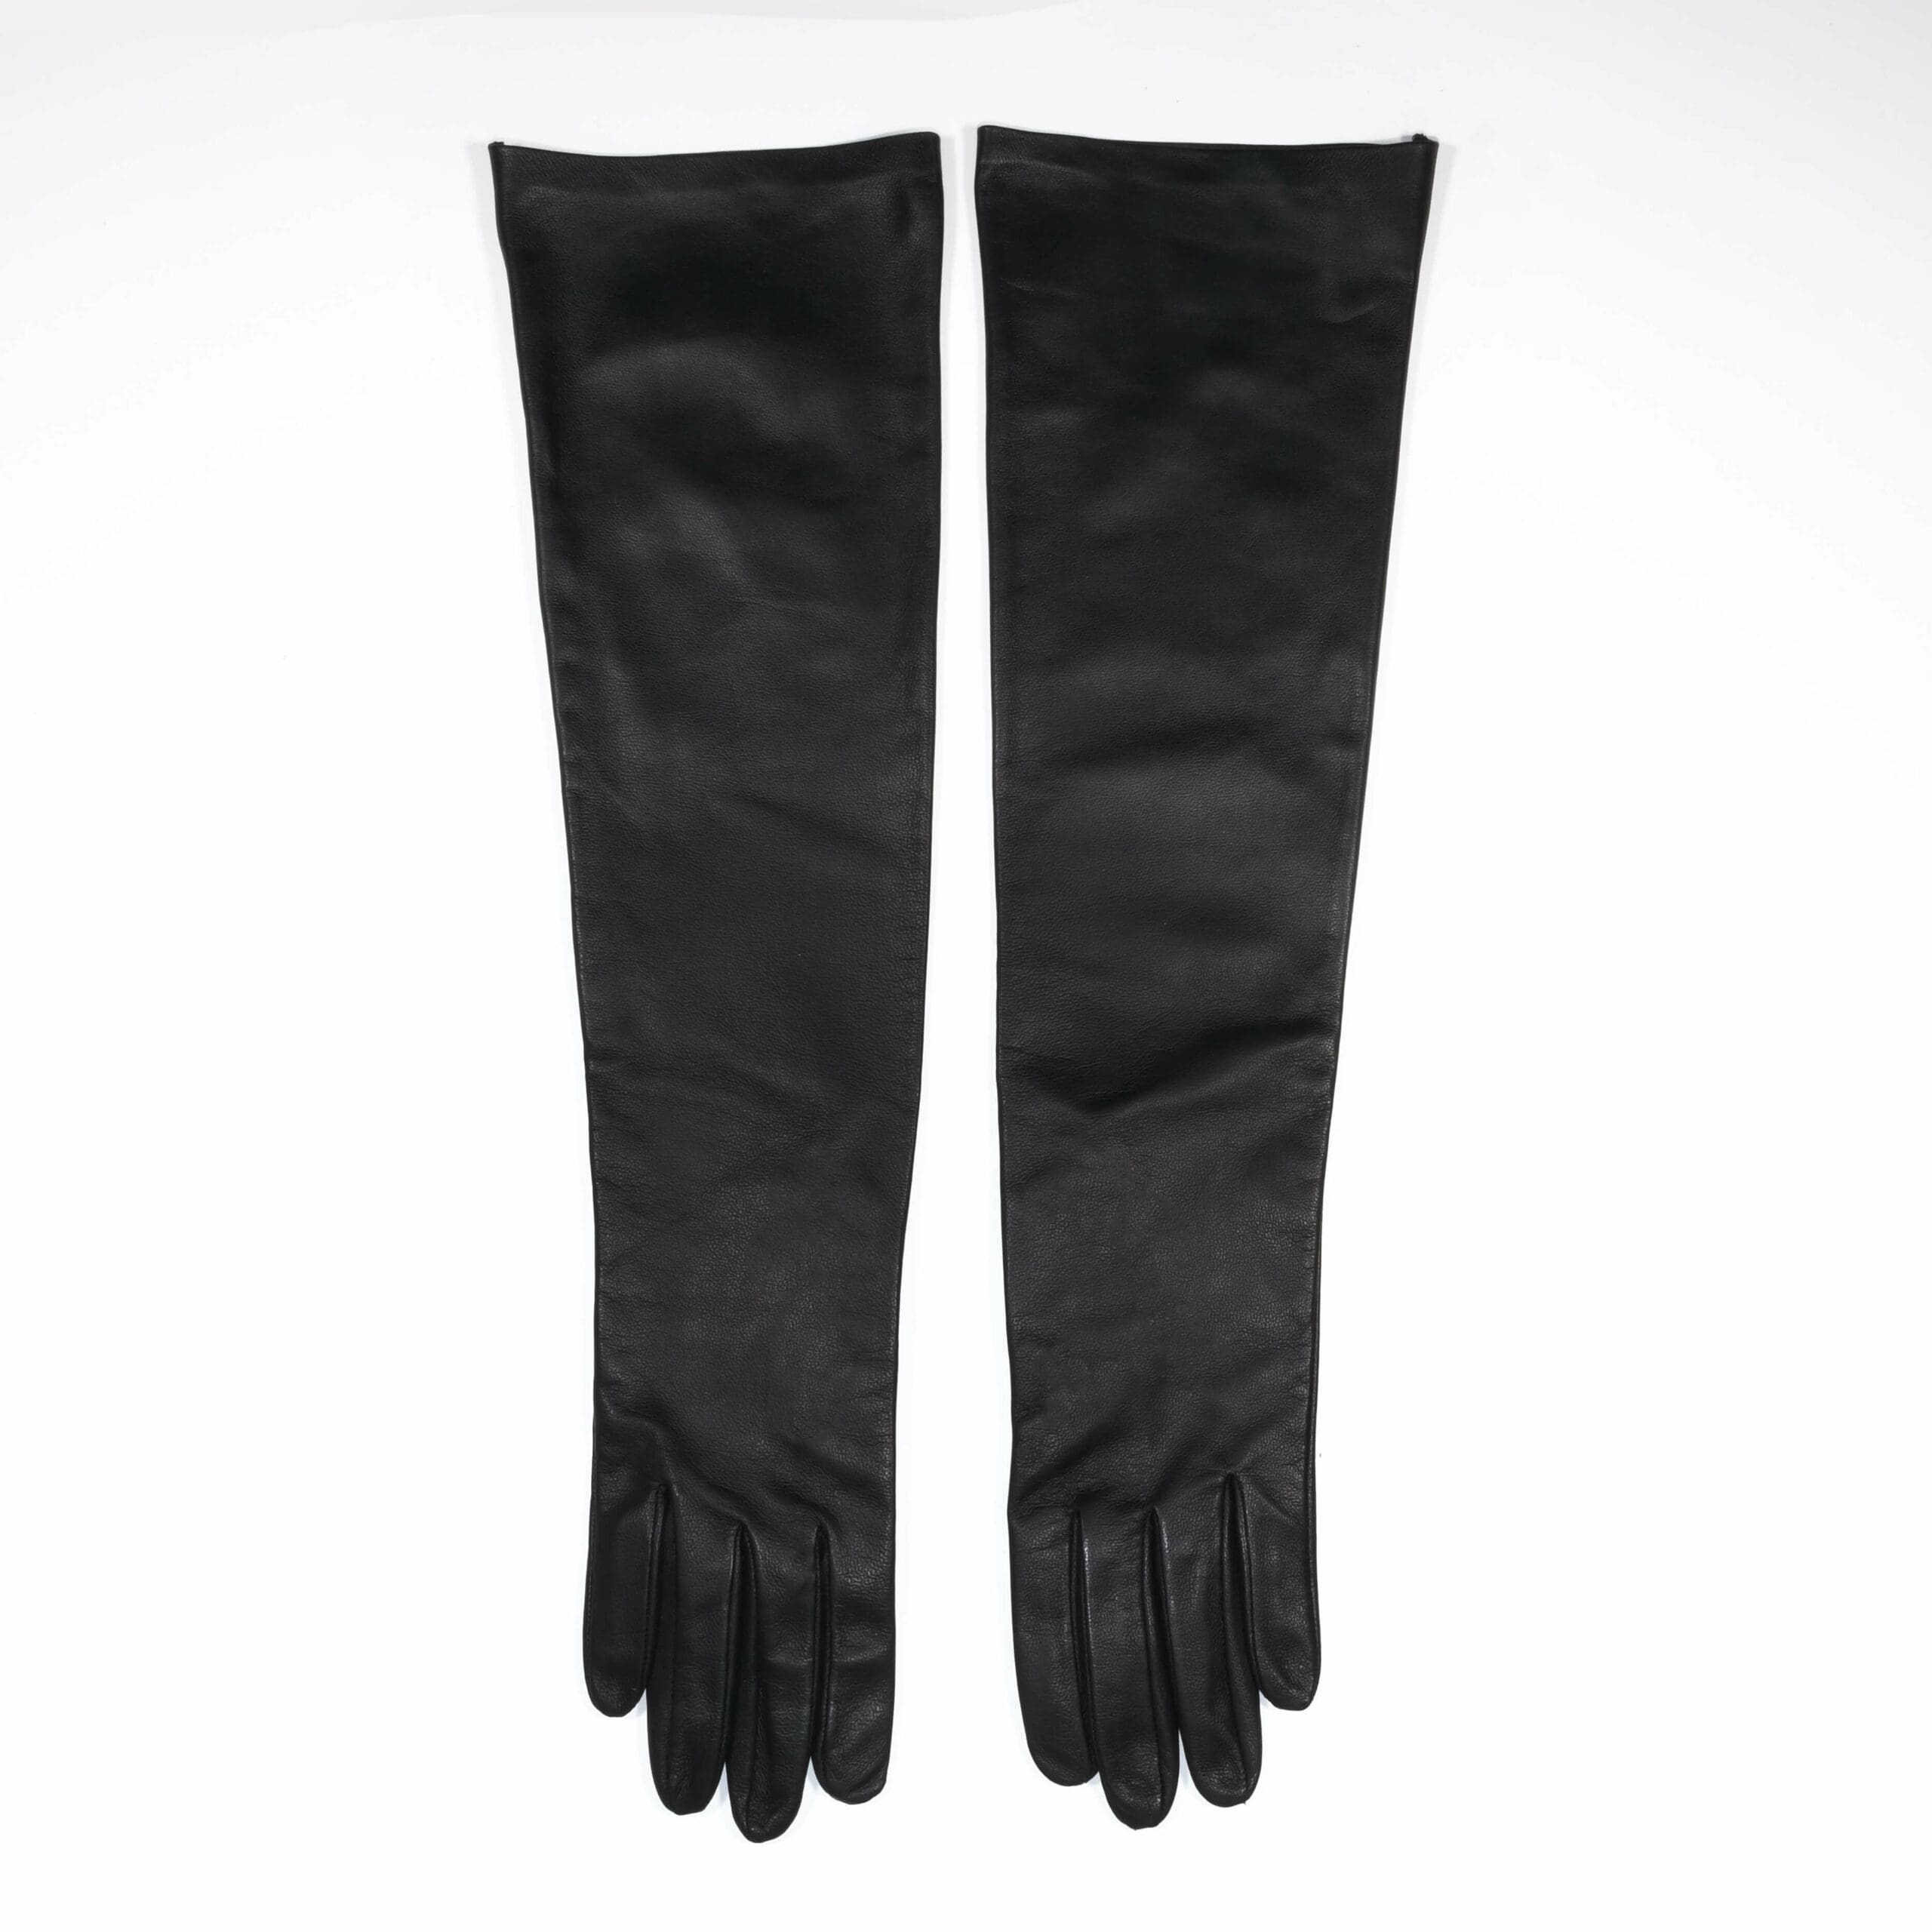 Elif Domanic Minu Handschoenen Zwart 2